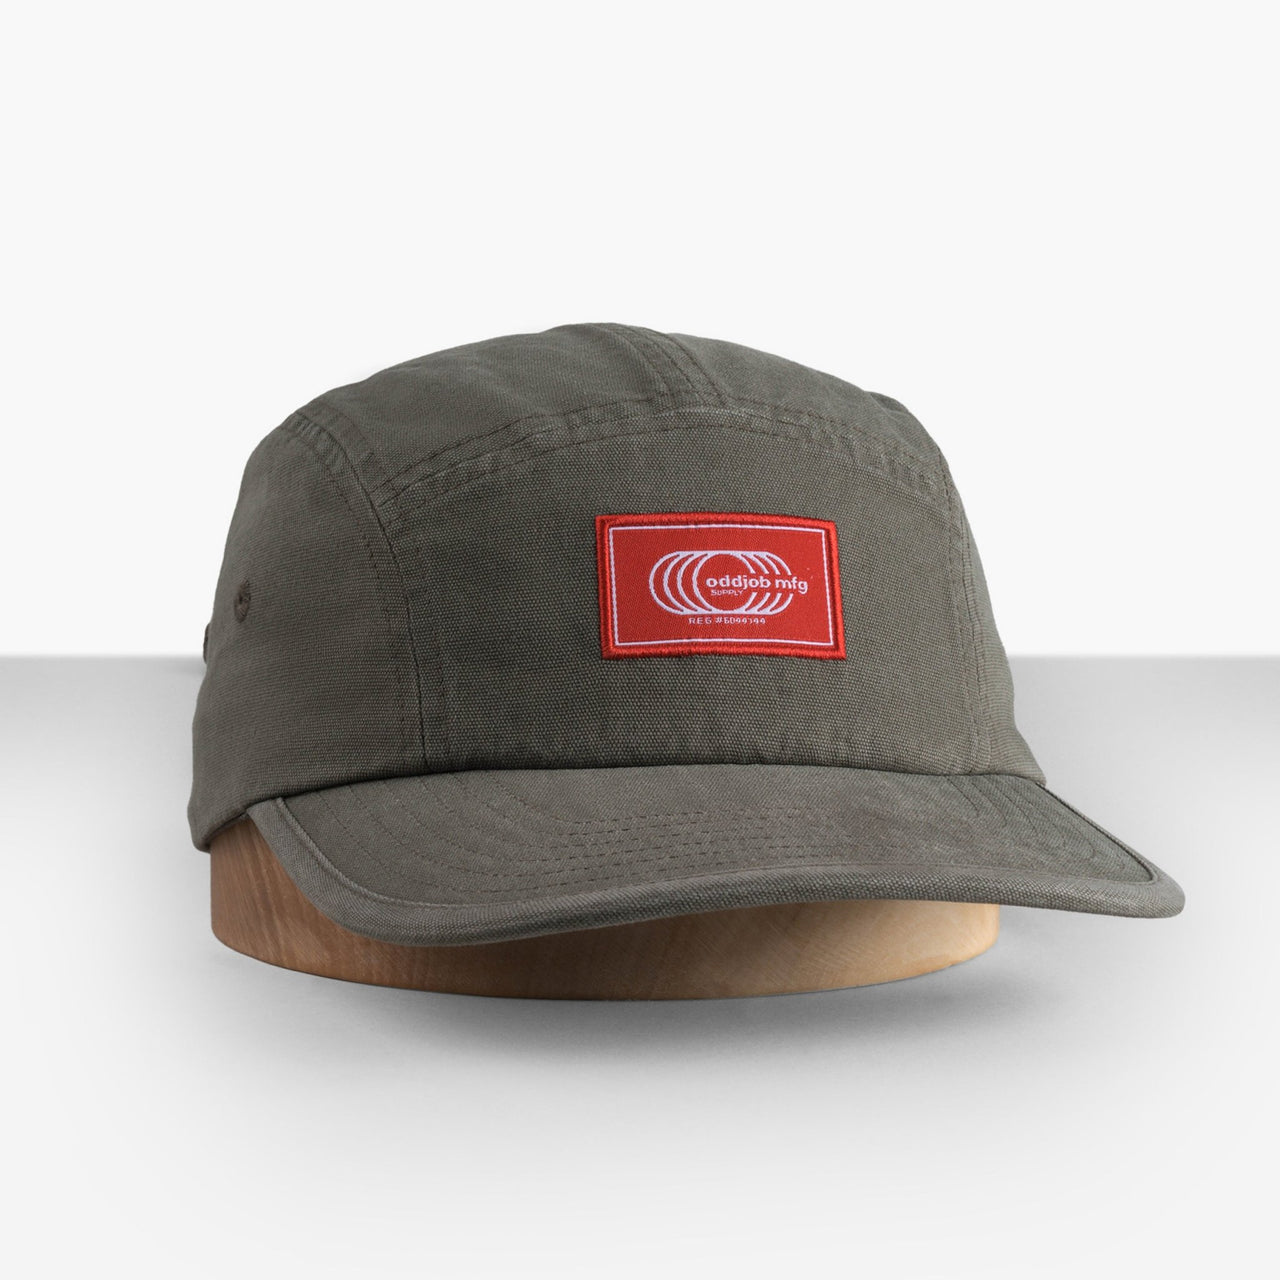 Big Straw Sun Hat / Hats For Big Heads / Oddjob Hats - Oddjob® Hats